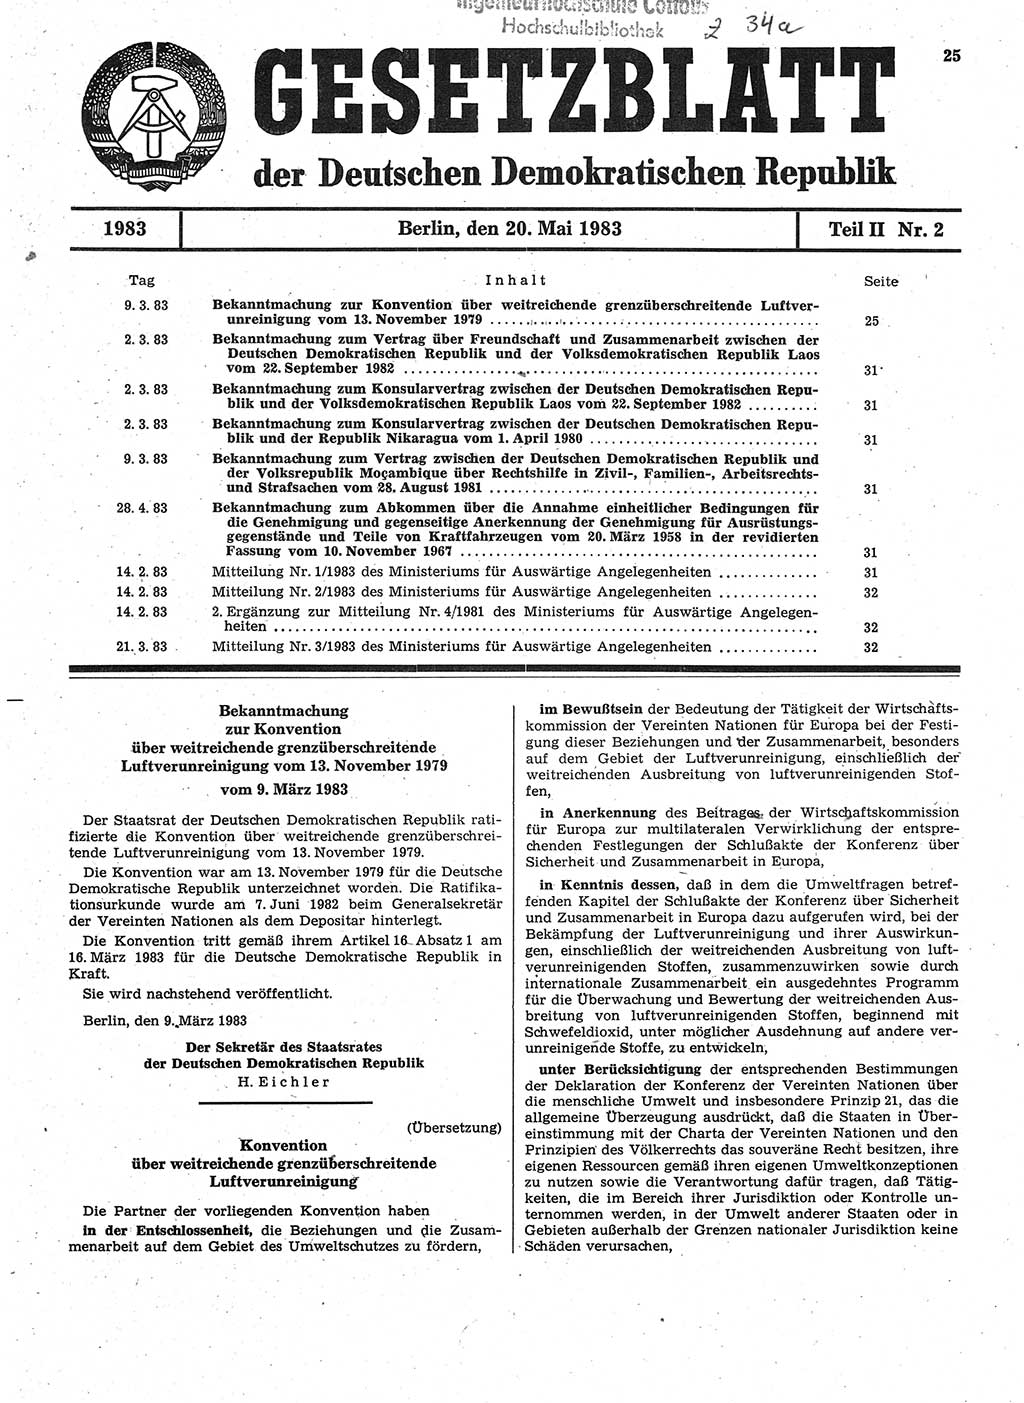 Gesetzblatt (GBl.) der Deutschen Demokratischen Republik (DDR) Teil ⅠⅠ 1983, Seite 25 (GBl. DDR ⅠⅠ 1983, S. 25)